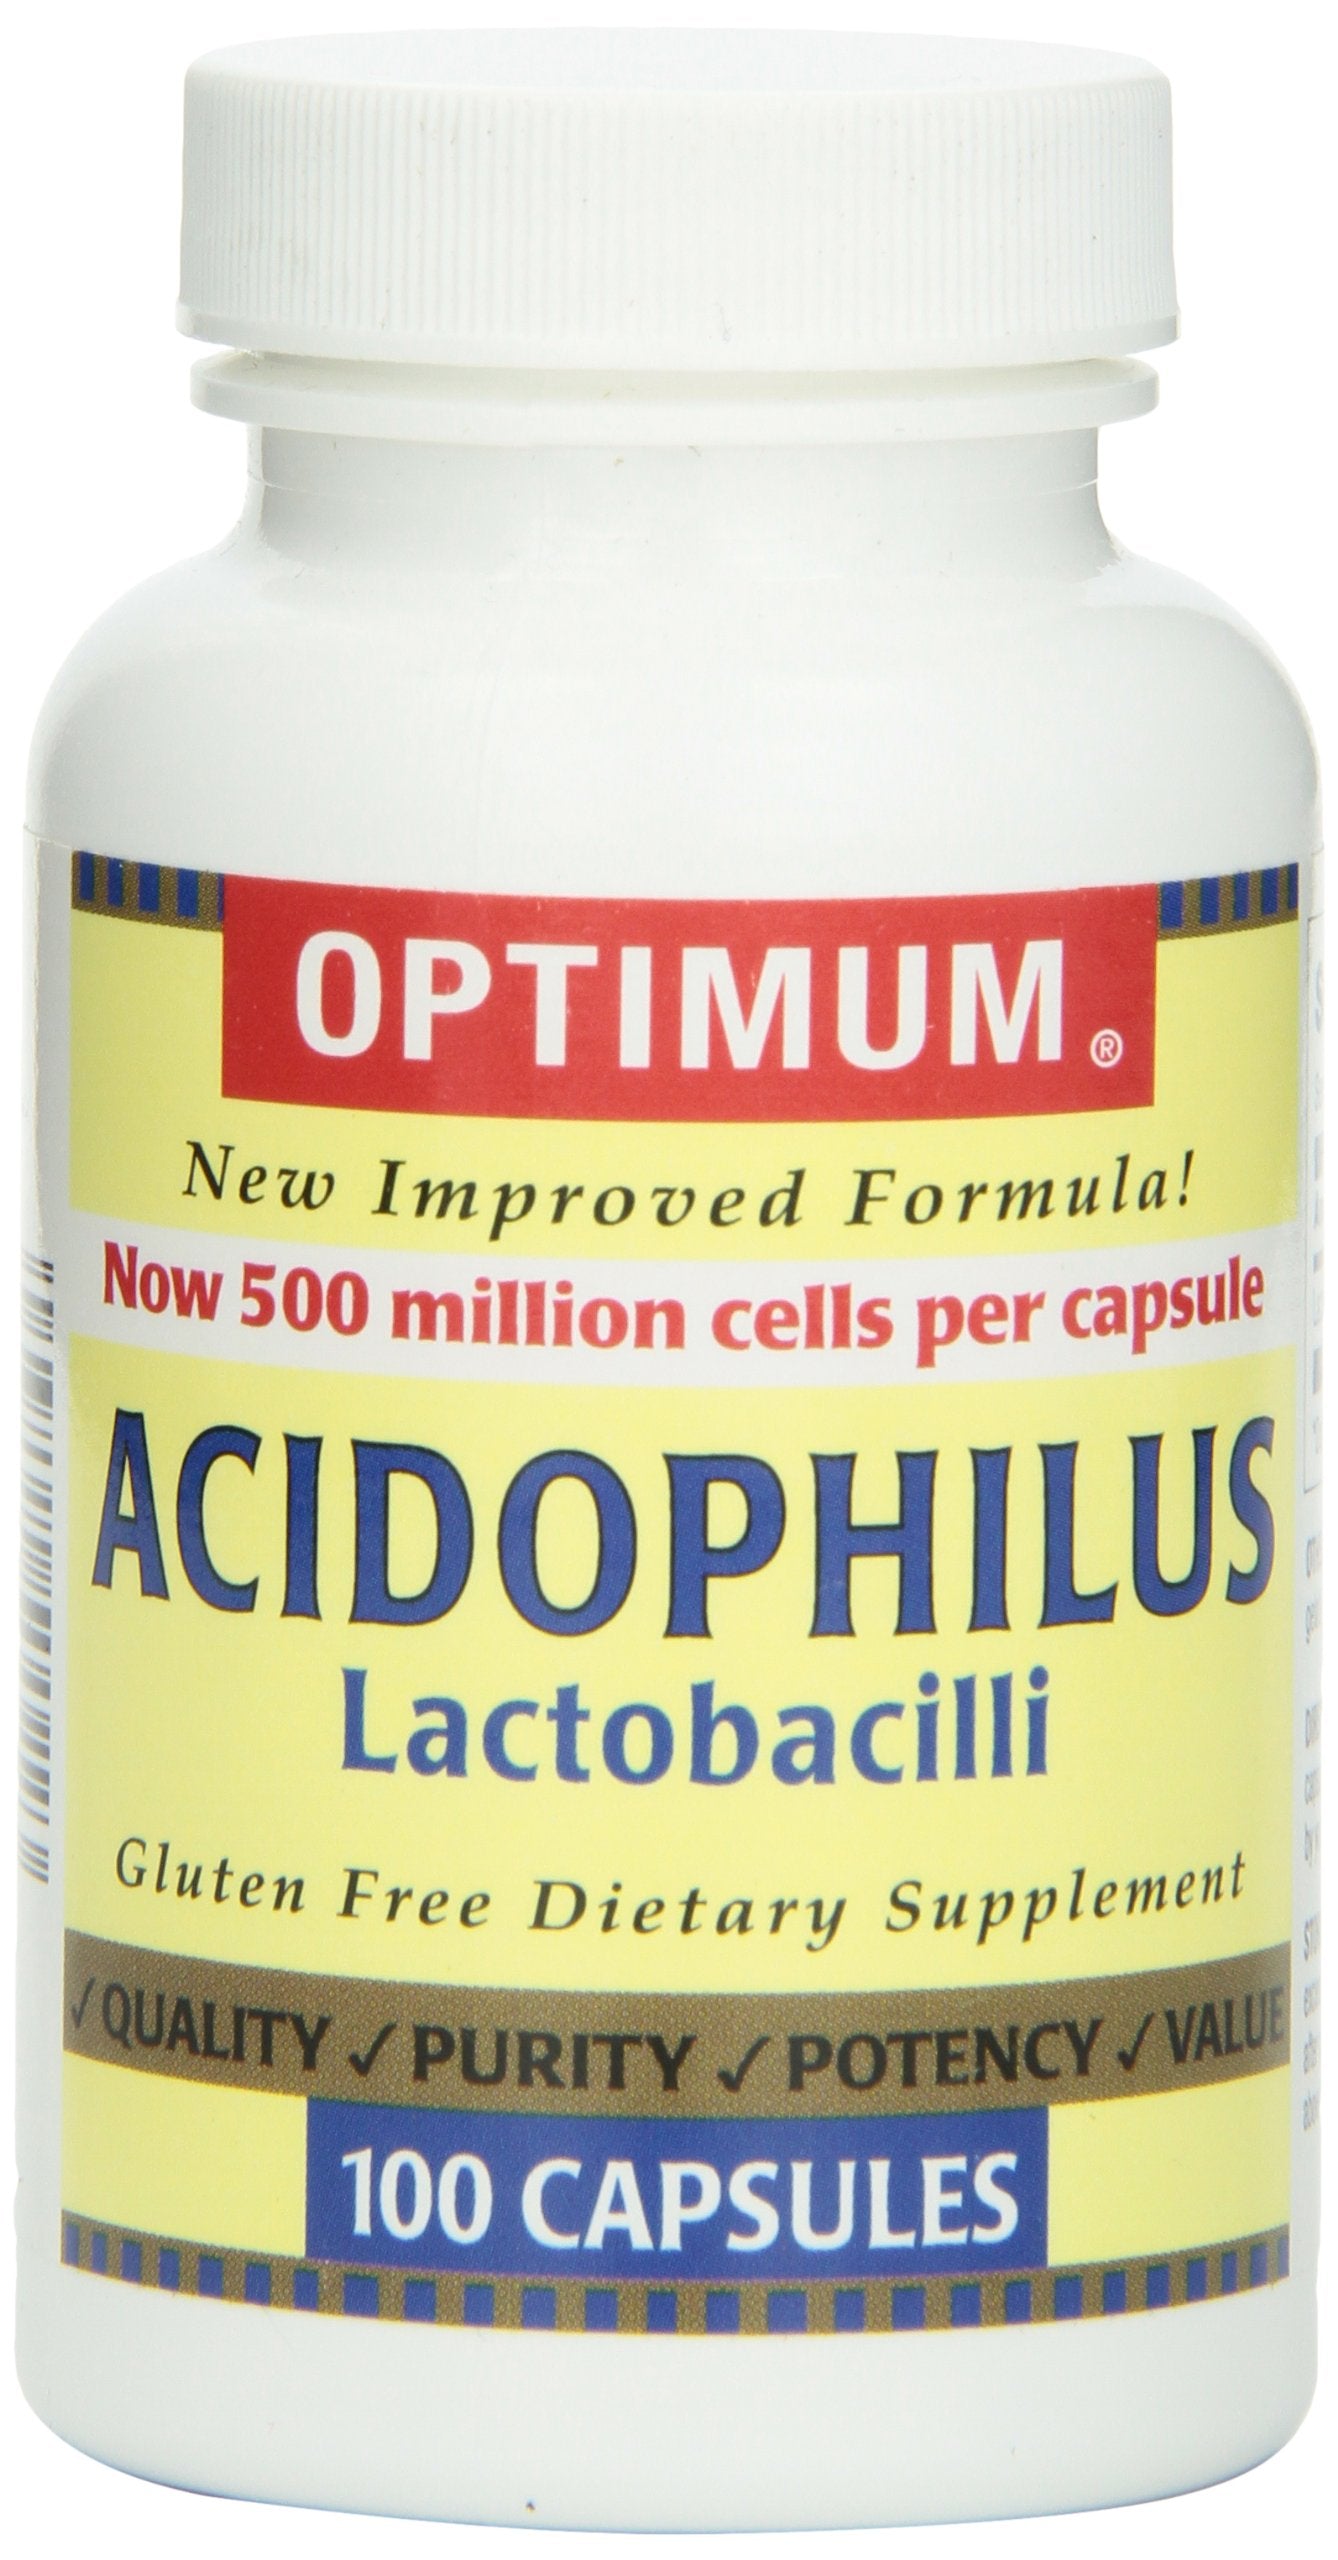 Optimum Acidophilus Lactobacilli Capsules, 100 Count